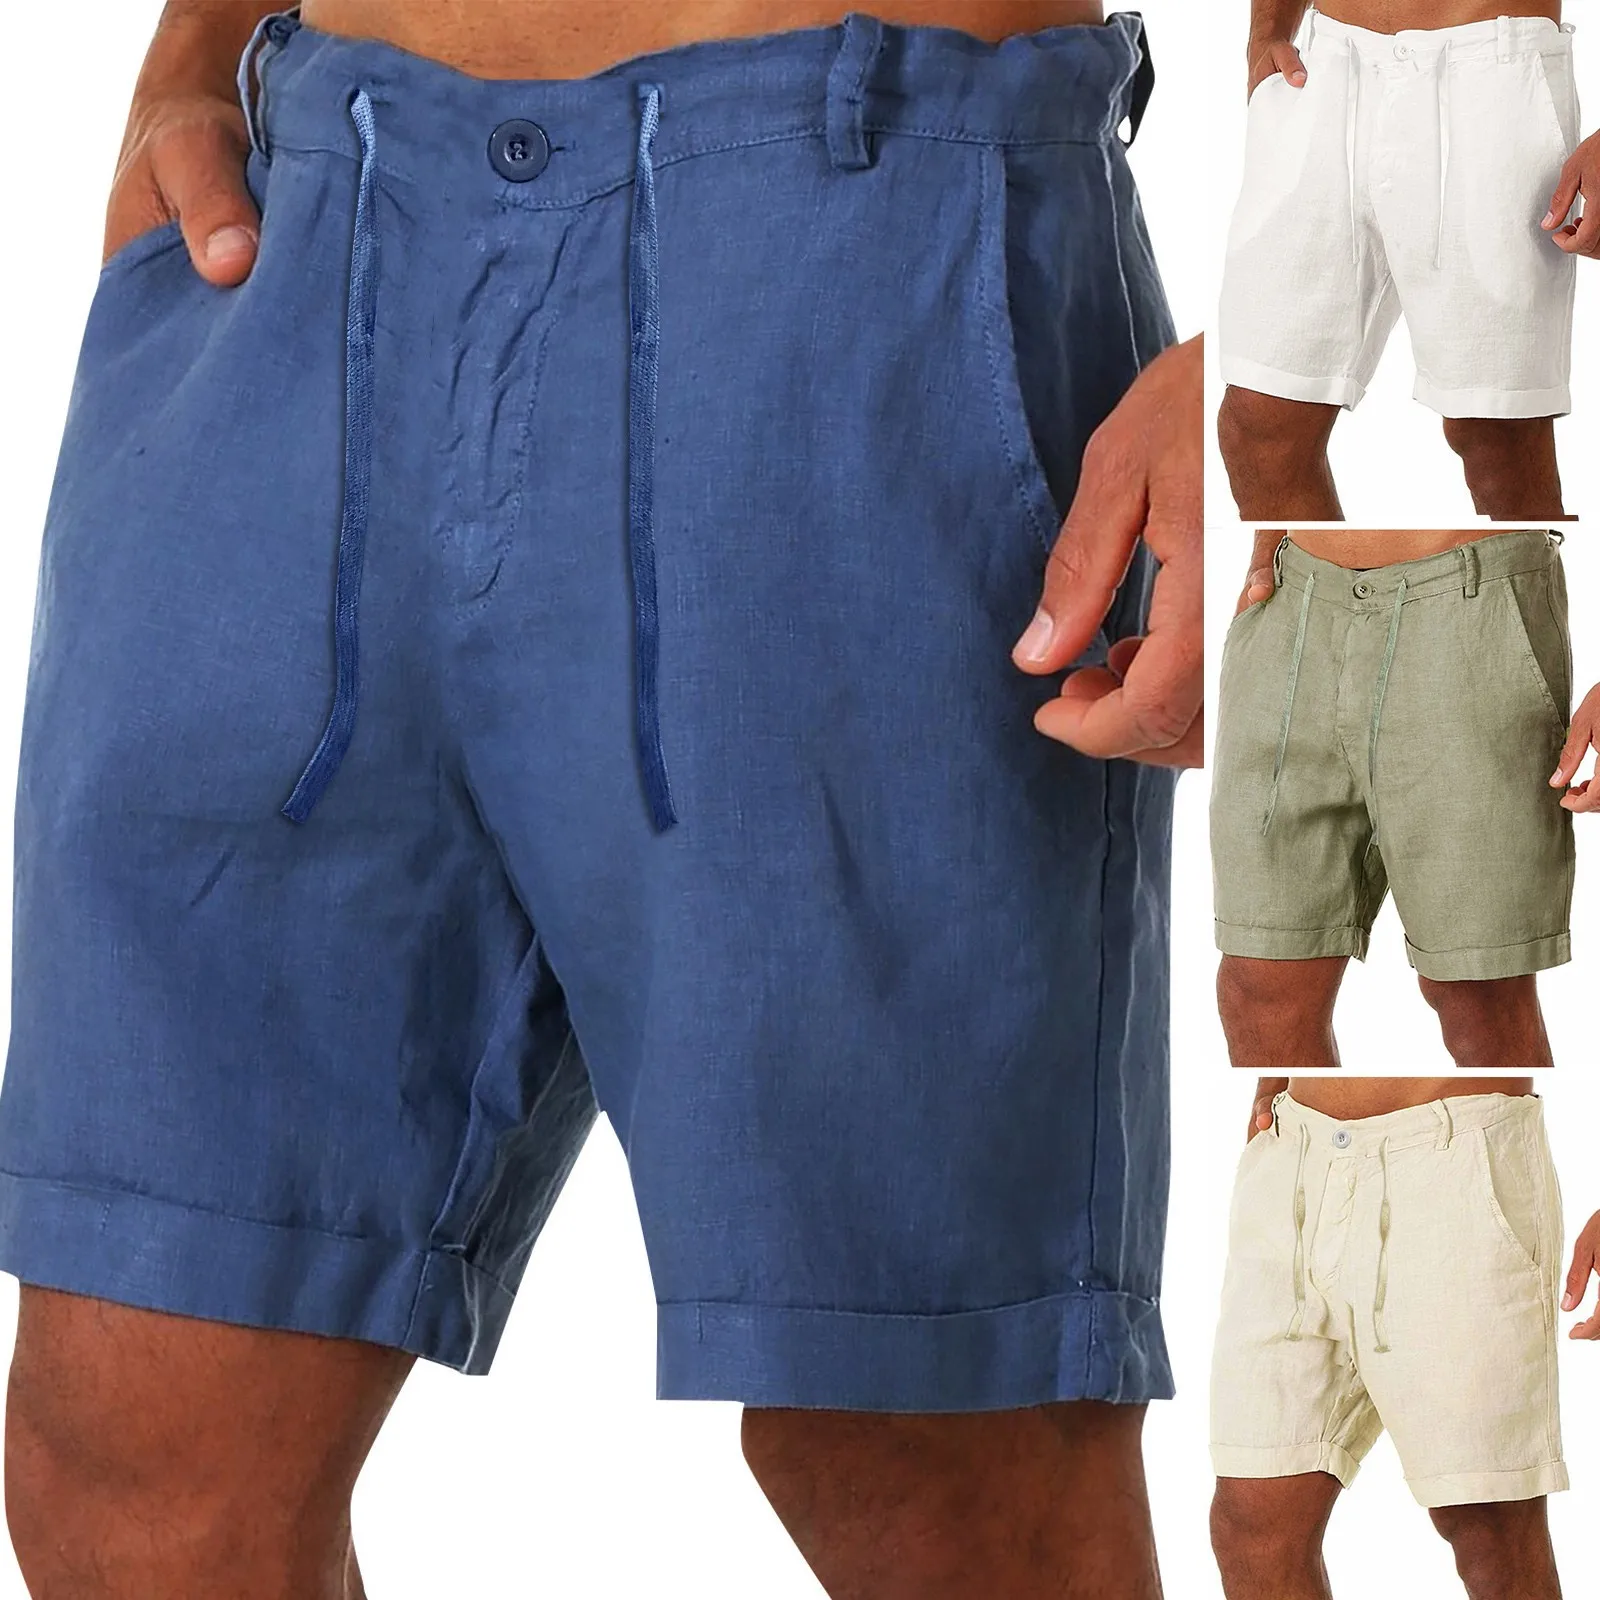 

Fashion Men Cotton Linen Casual Pants Buttons Lacing Waist Pockets Short Pants Short Homme Bermuda Masculina Шорты Мужские